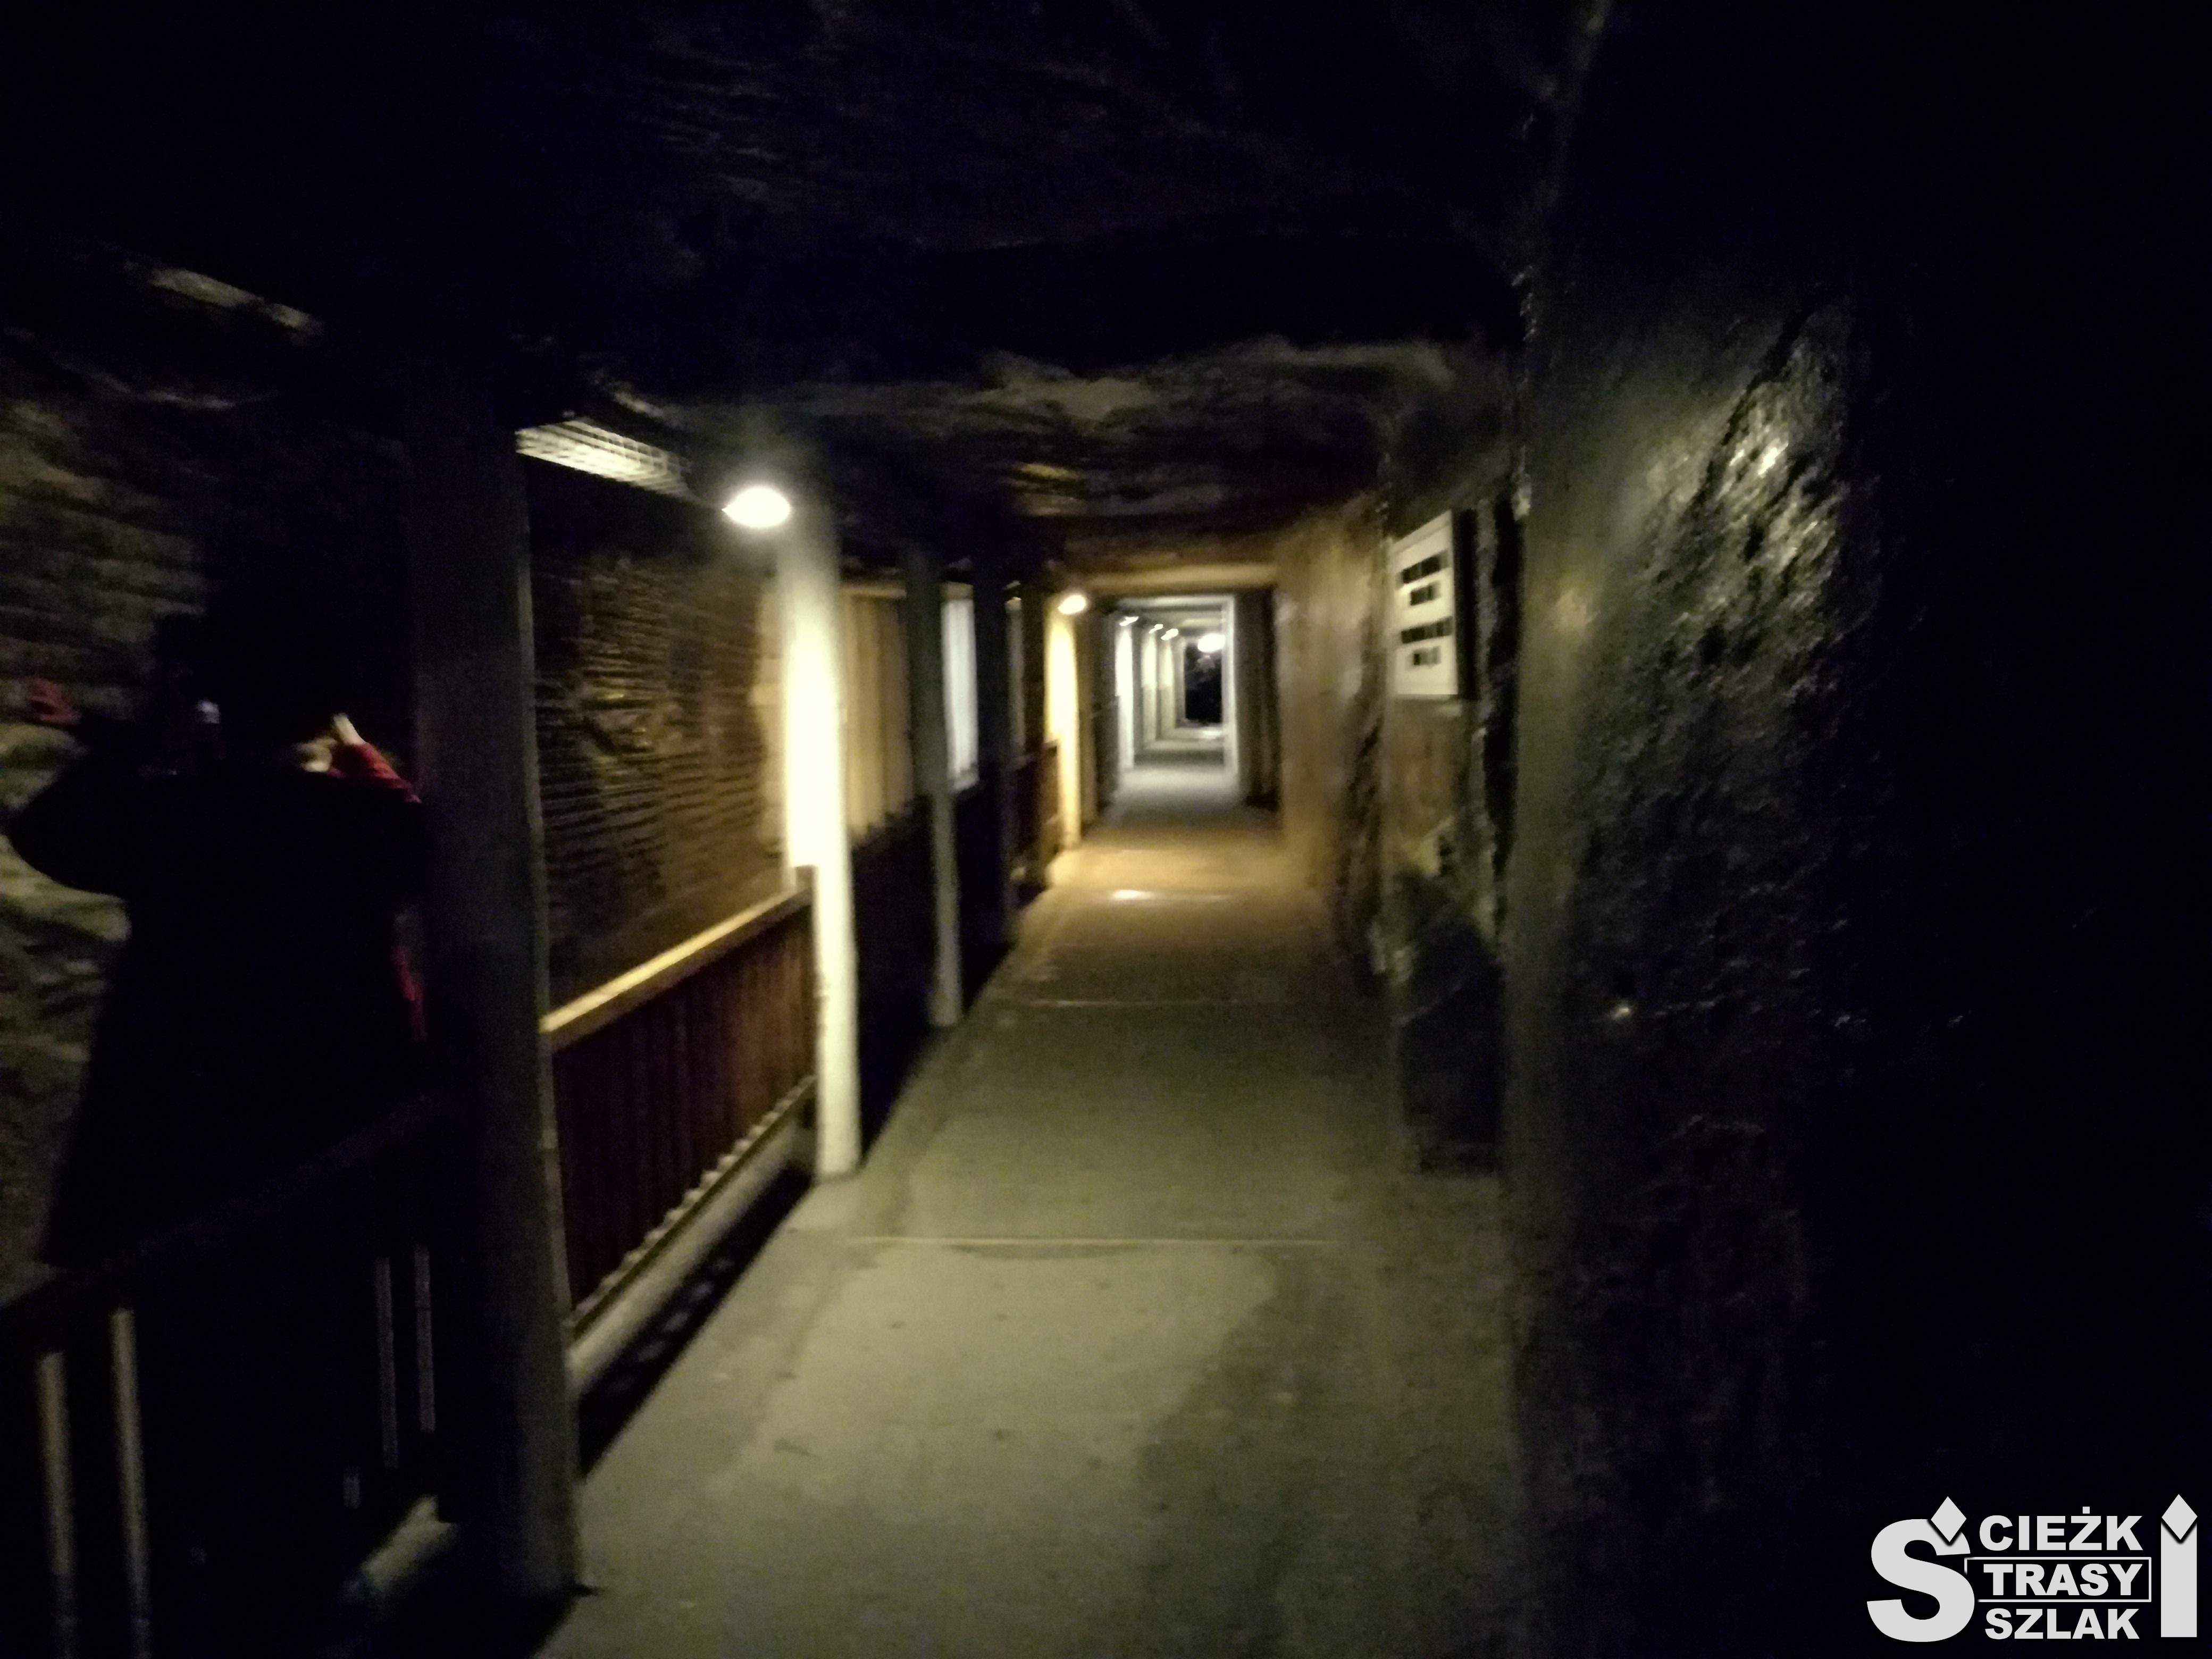 Ciemny korytarz lekko podświetlony wydrążony w ziemi w czasie wydobywania soli w Wieliczce